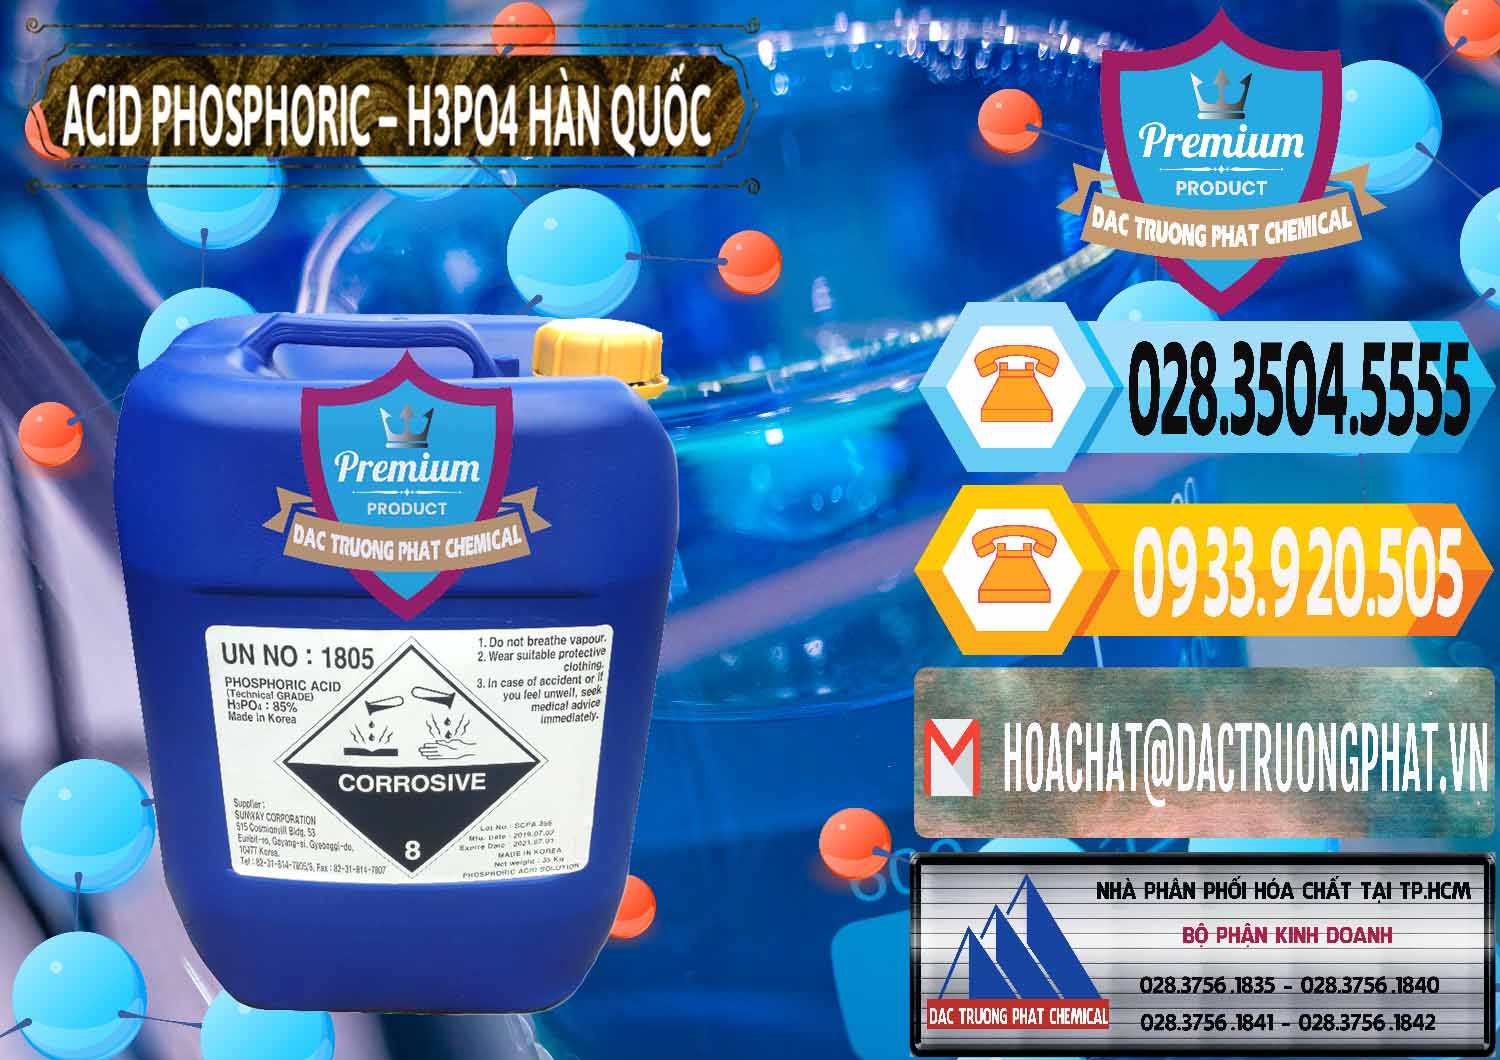 Công ty cung cấp & bán Acid Phosphoric – H3PO4 85% Can Xanh Hàn Quốc Korea - 0016 - Công ty bán ( cung cấp ) hóa chất tại TP.HCM - hoachattayrua.net